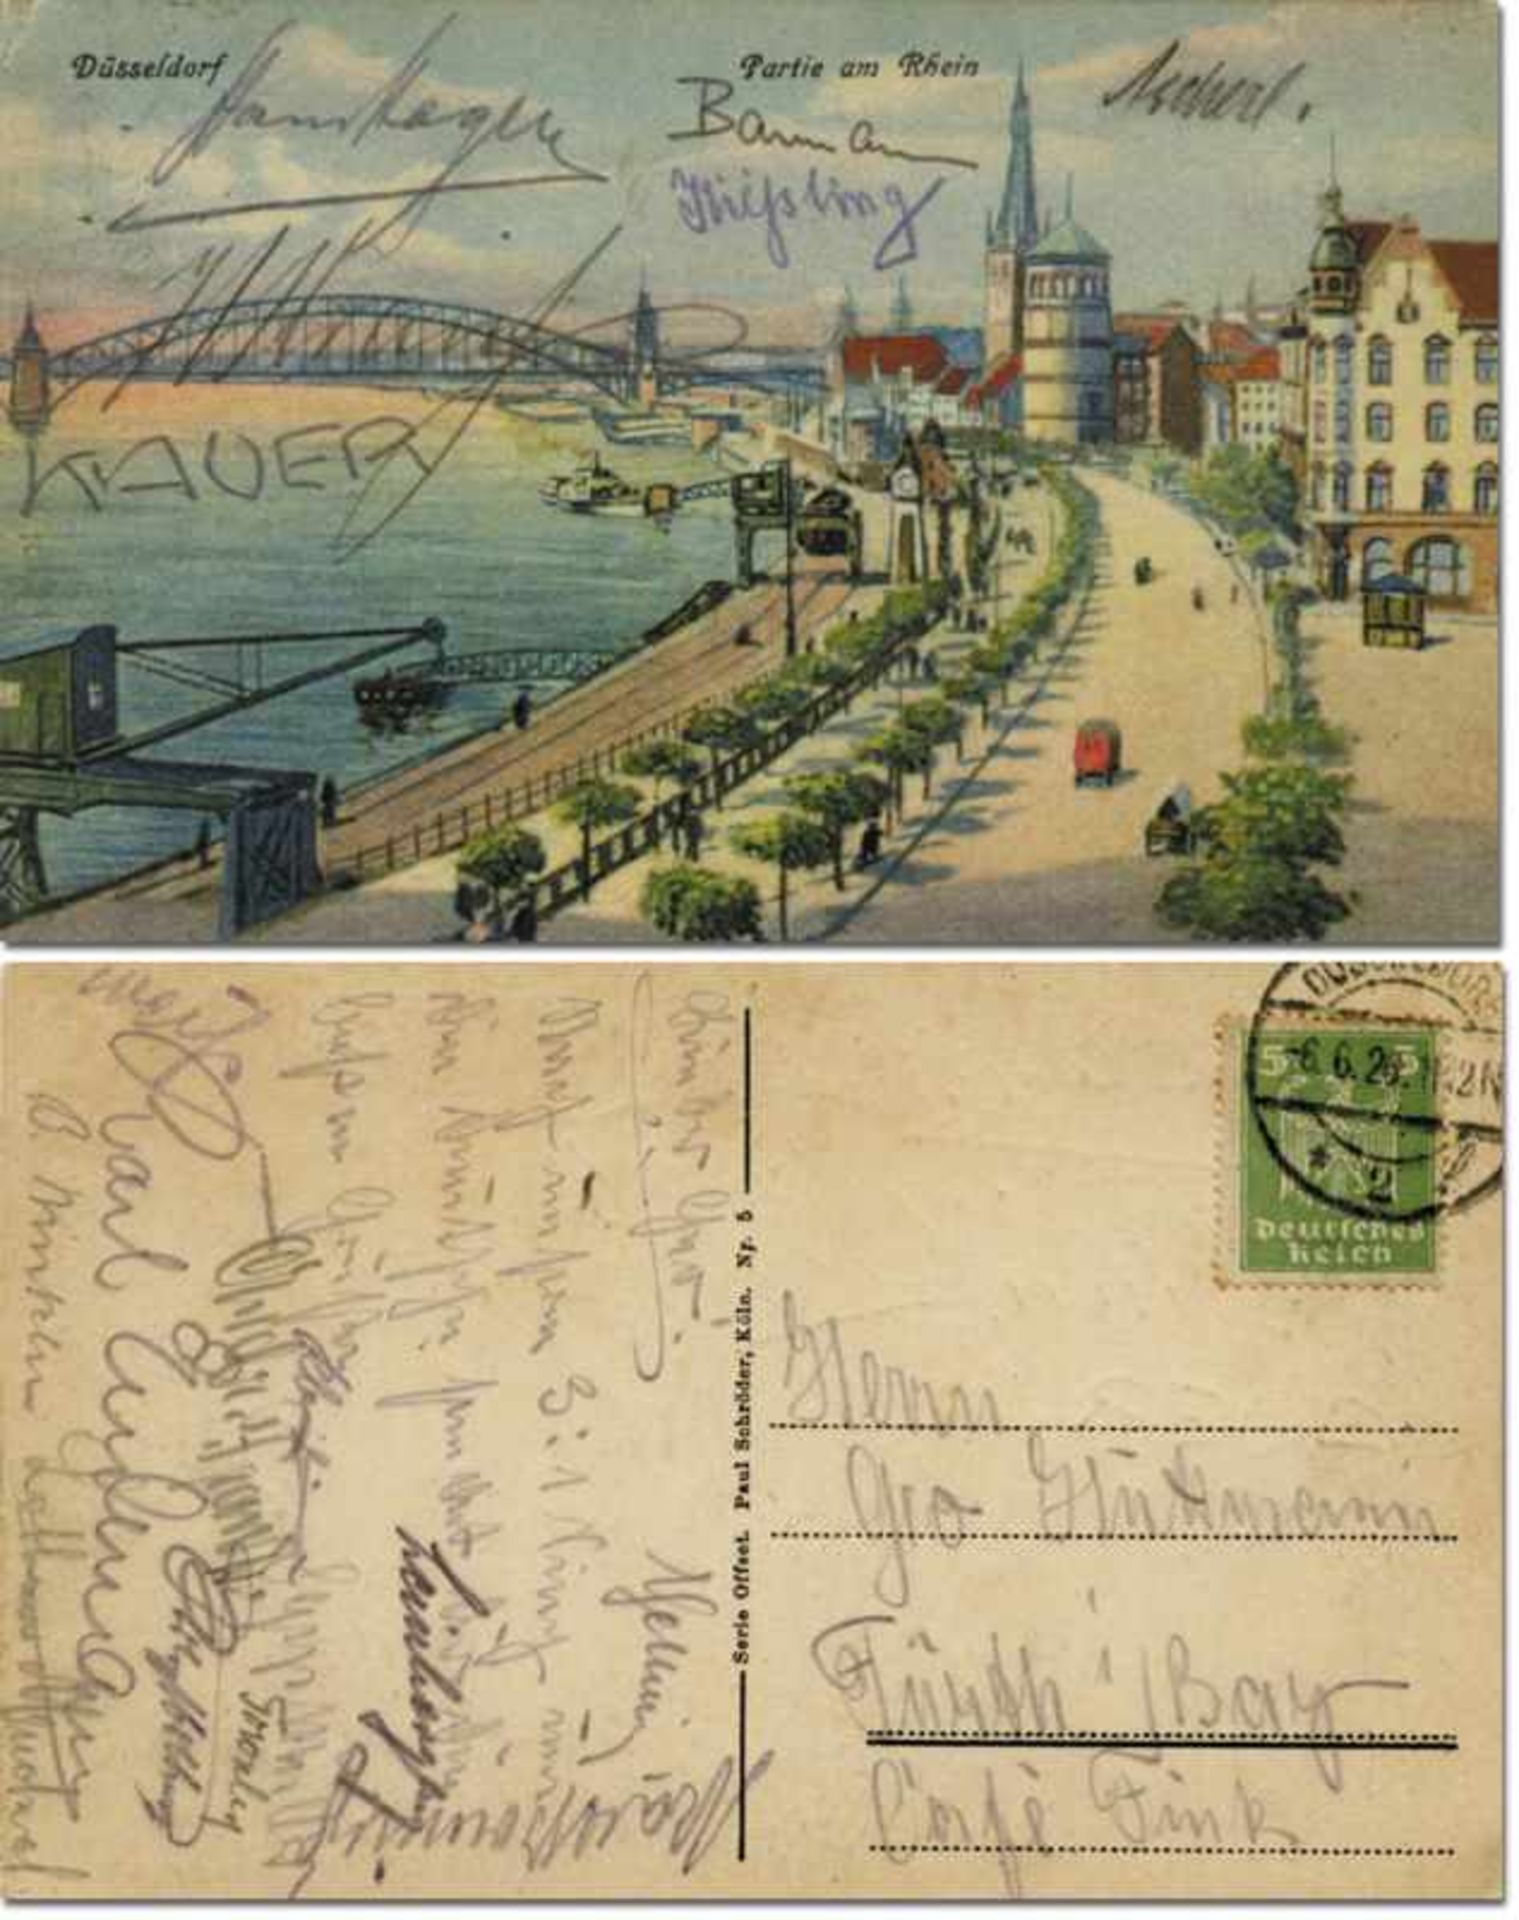 SpVgg Fuerth Postcard with autographs 1926 -Fürth,Spvgg 1926 - Postkarte der Spvgg Fürth vom